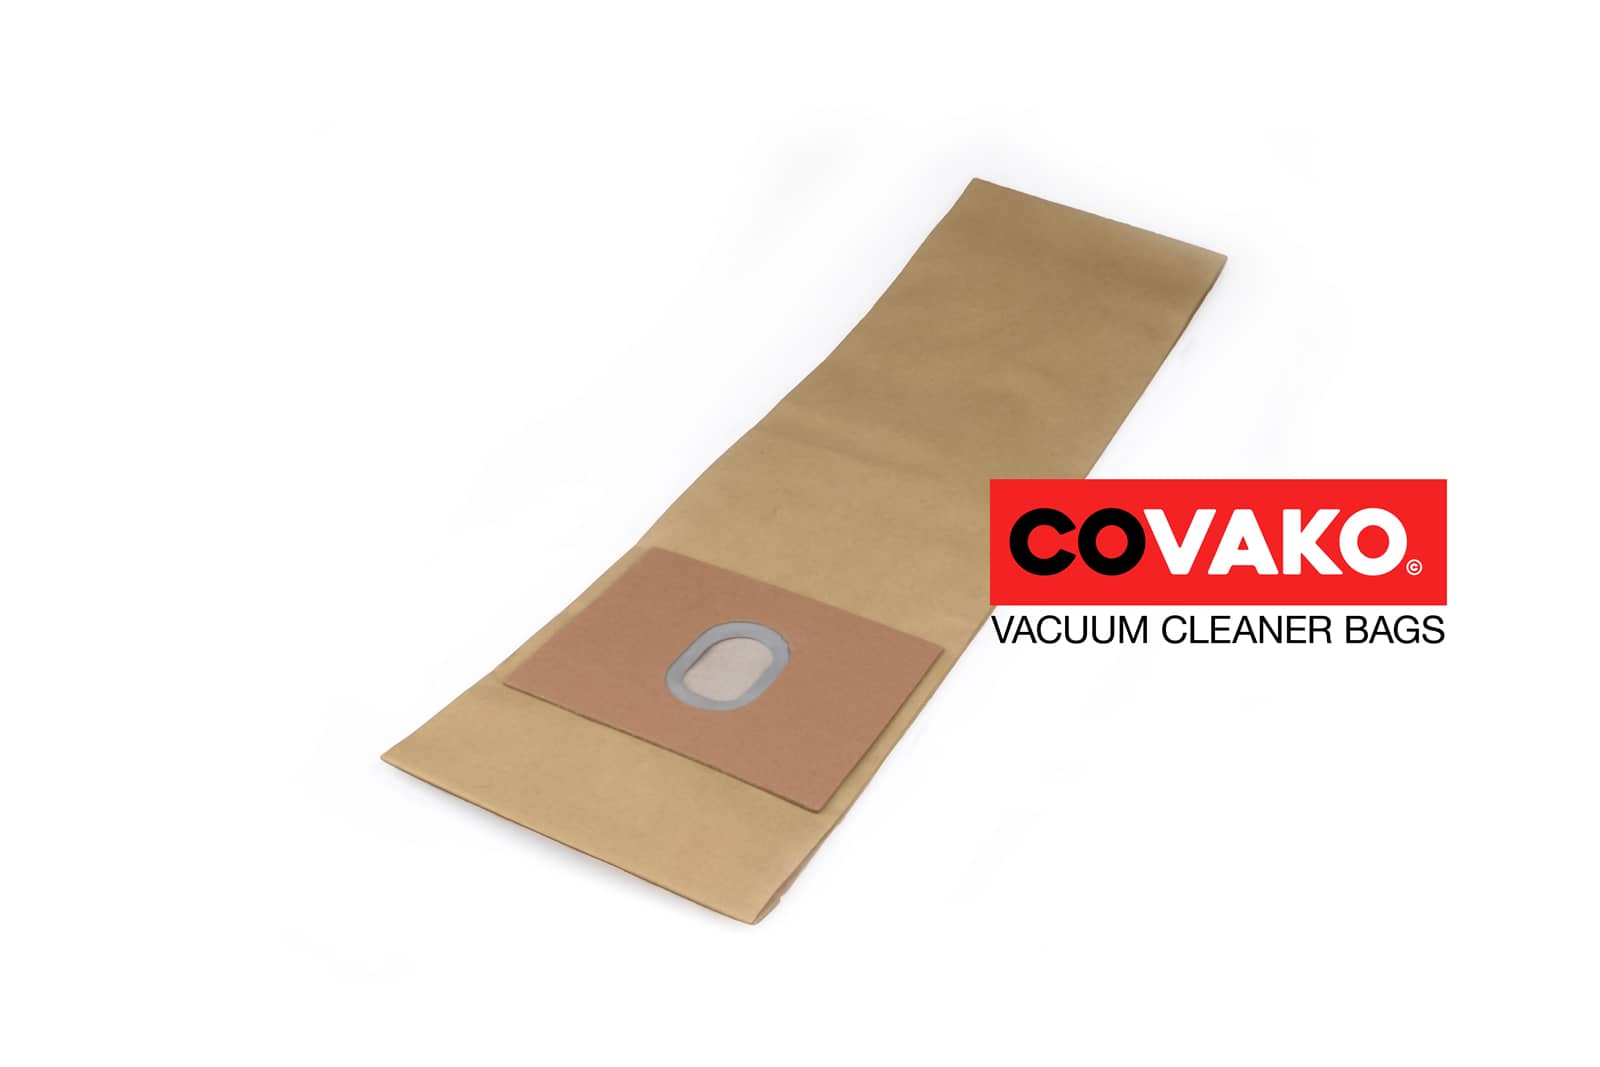 Fakir 275 / Paper - Fakir vacuum cleaner bags